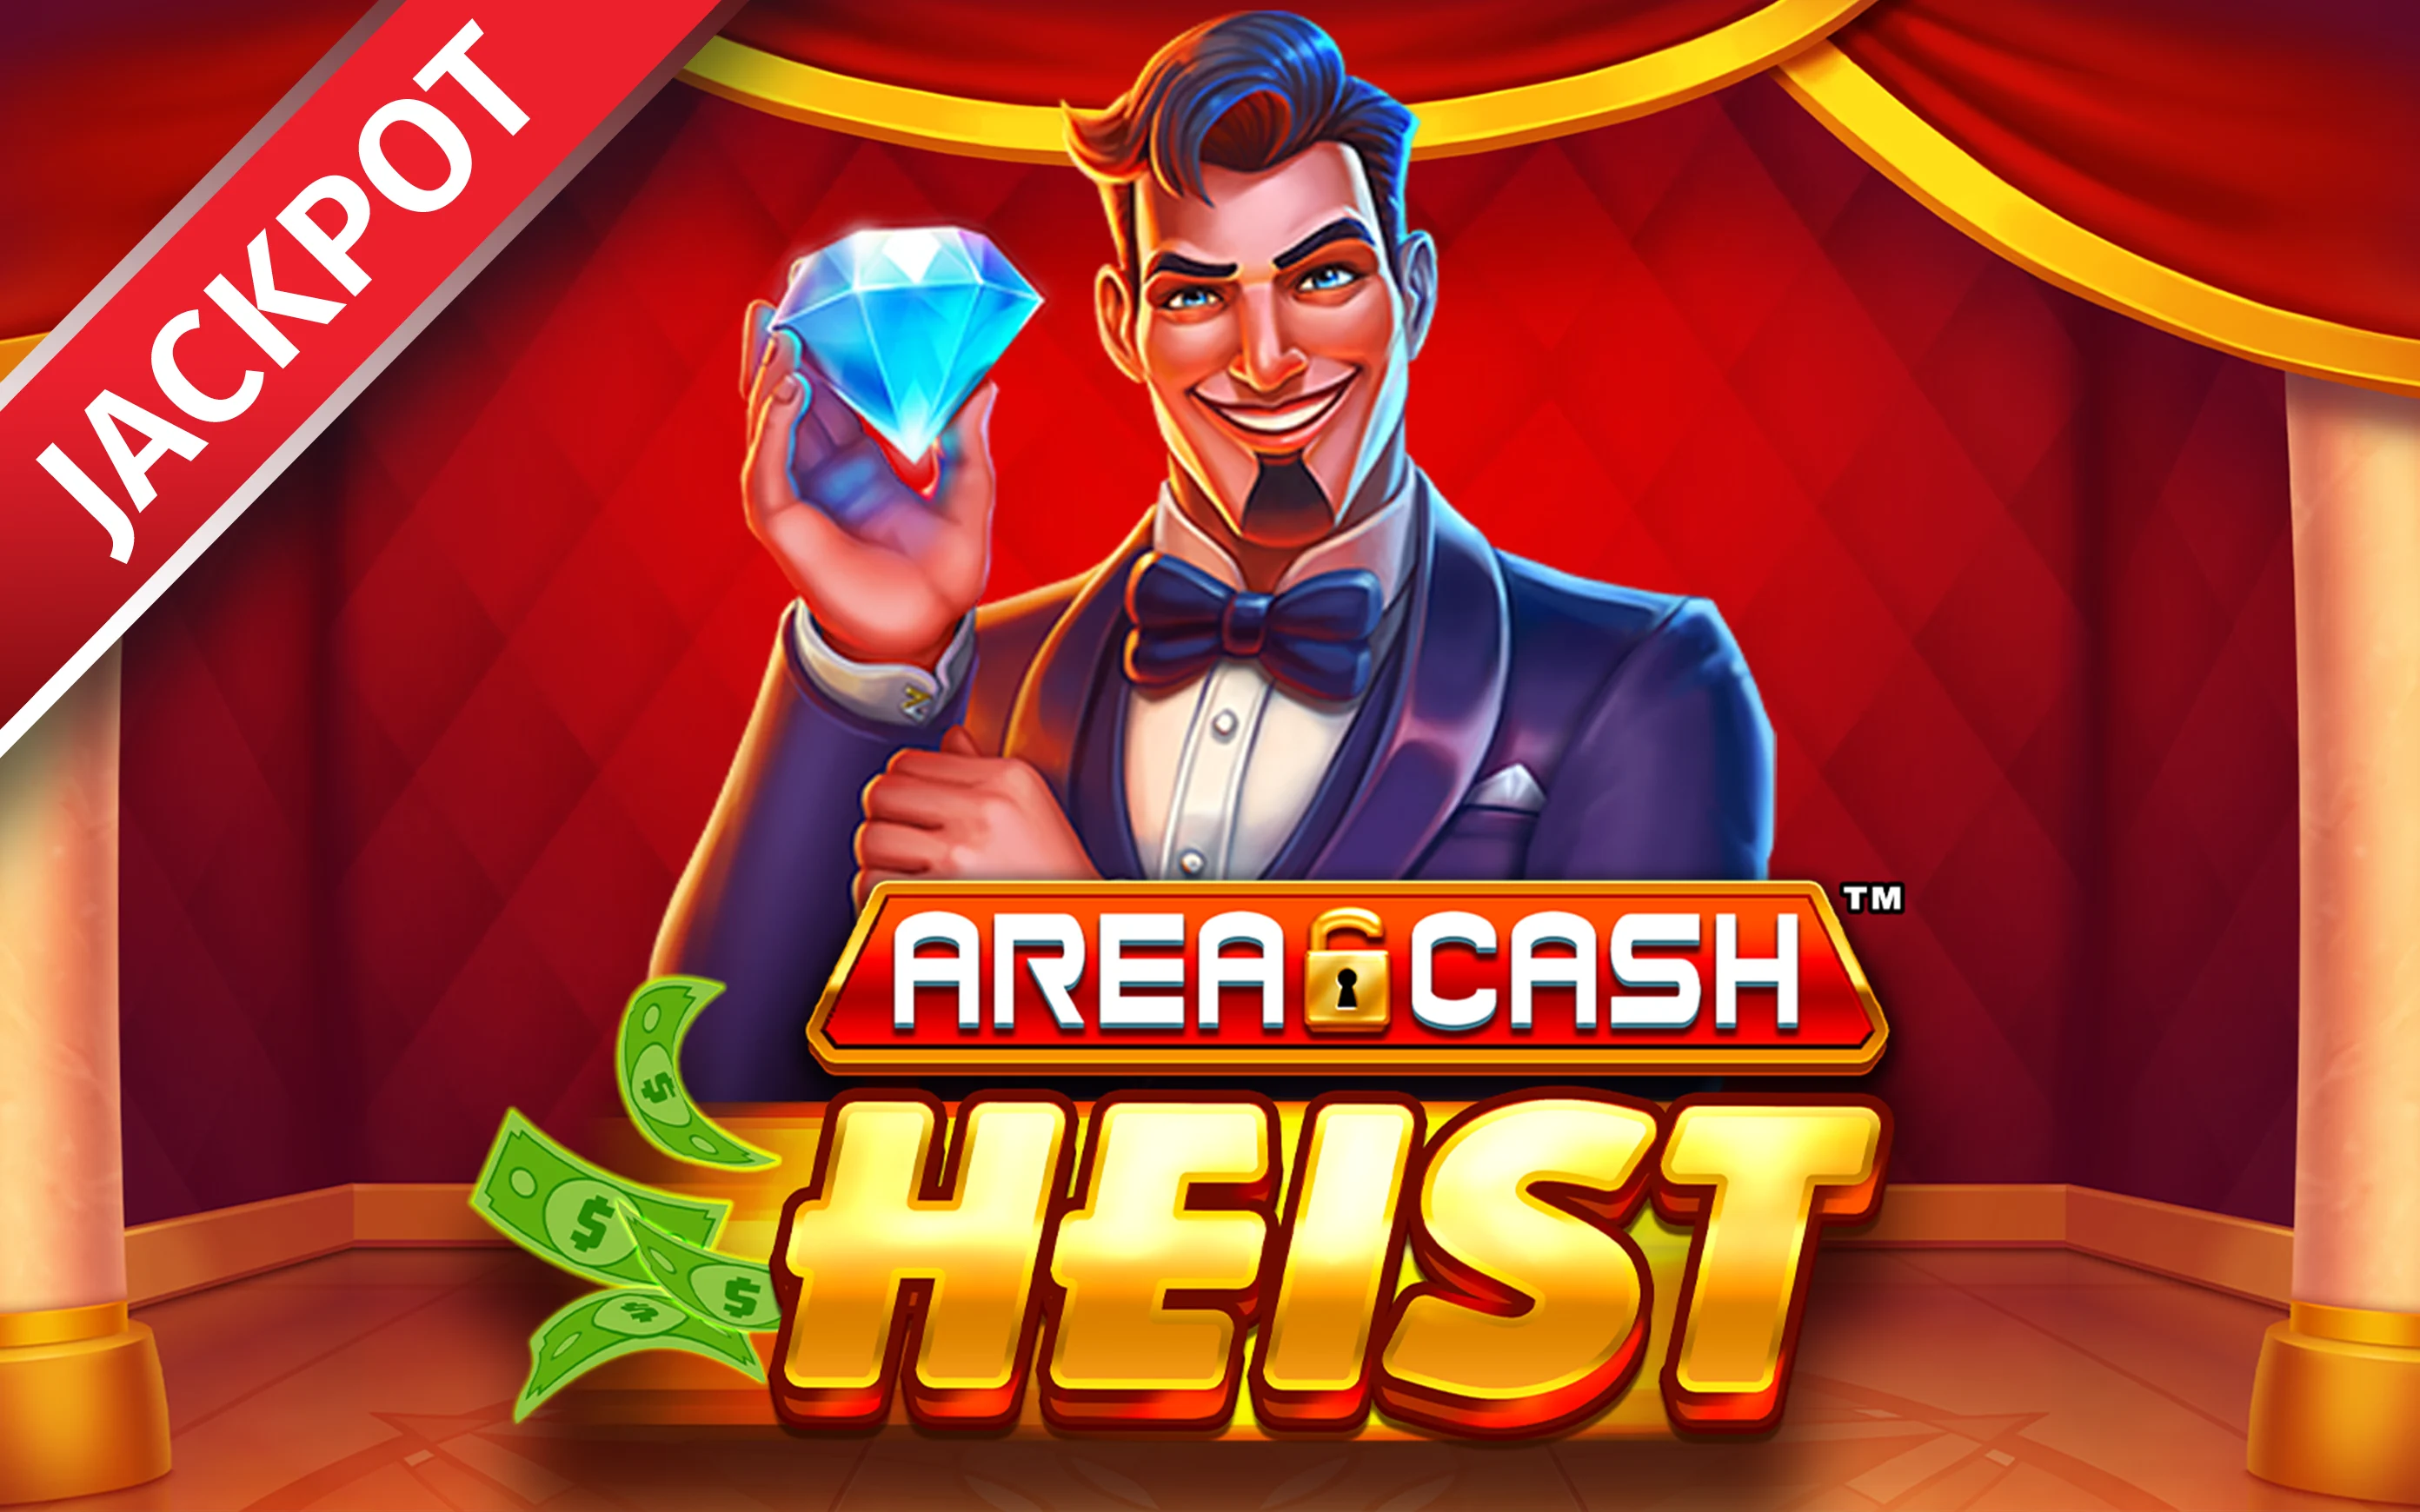 Starcasino.be online casino üzerinden Area Cash™ Heist oynayın